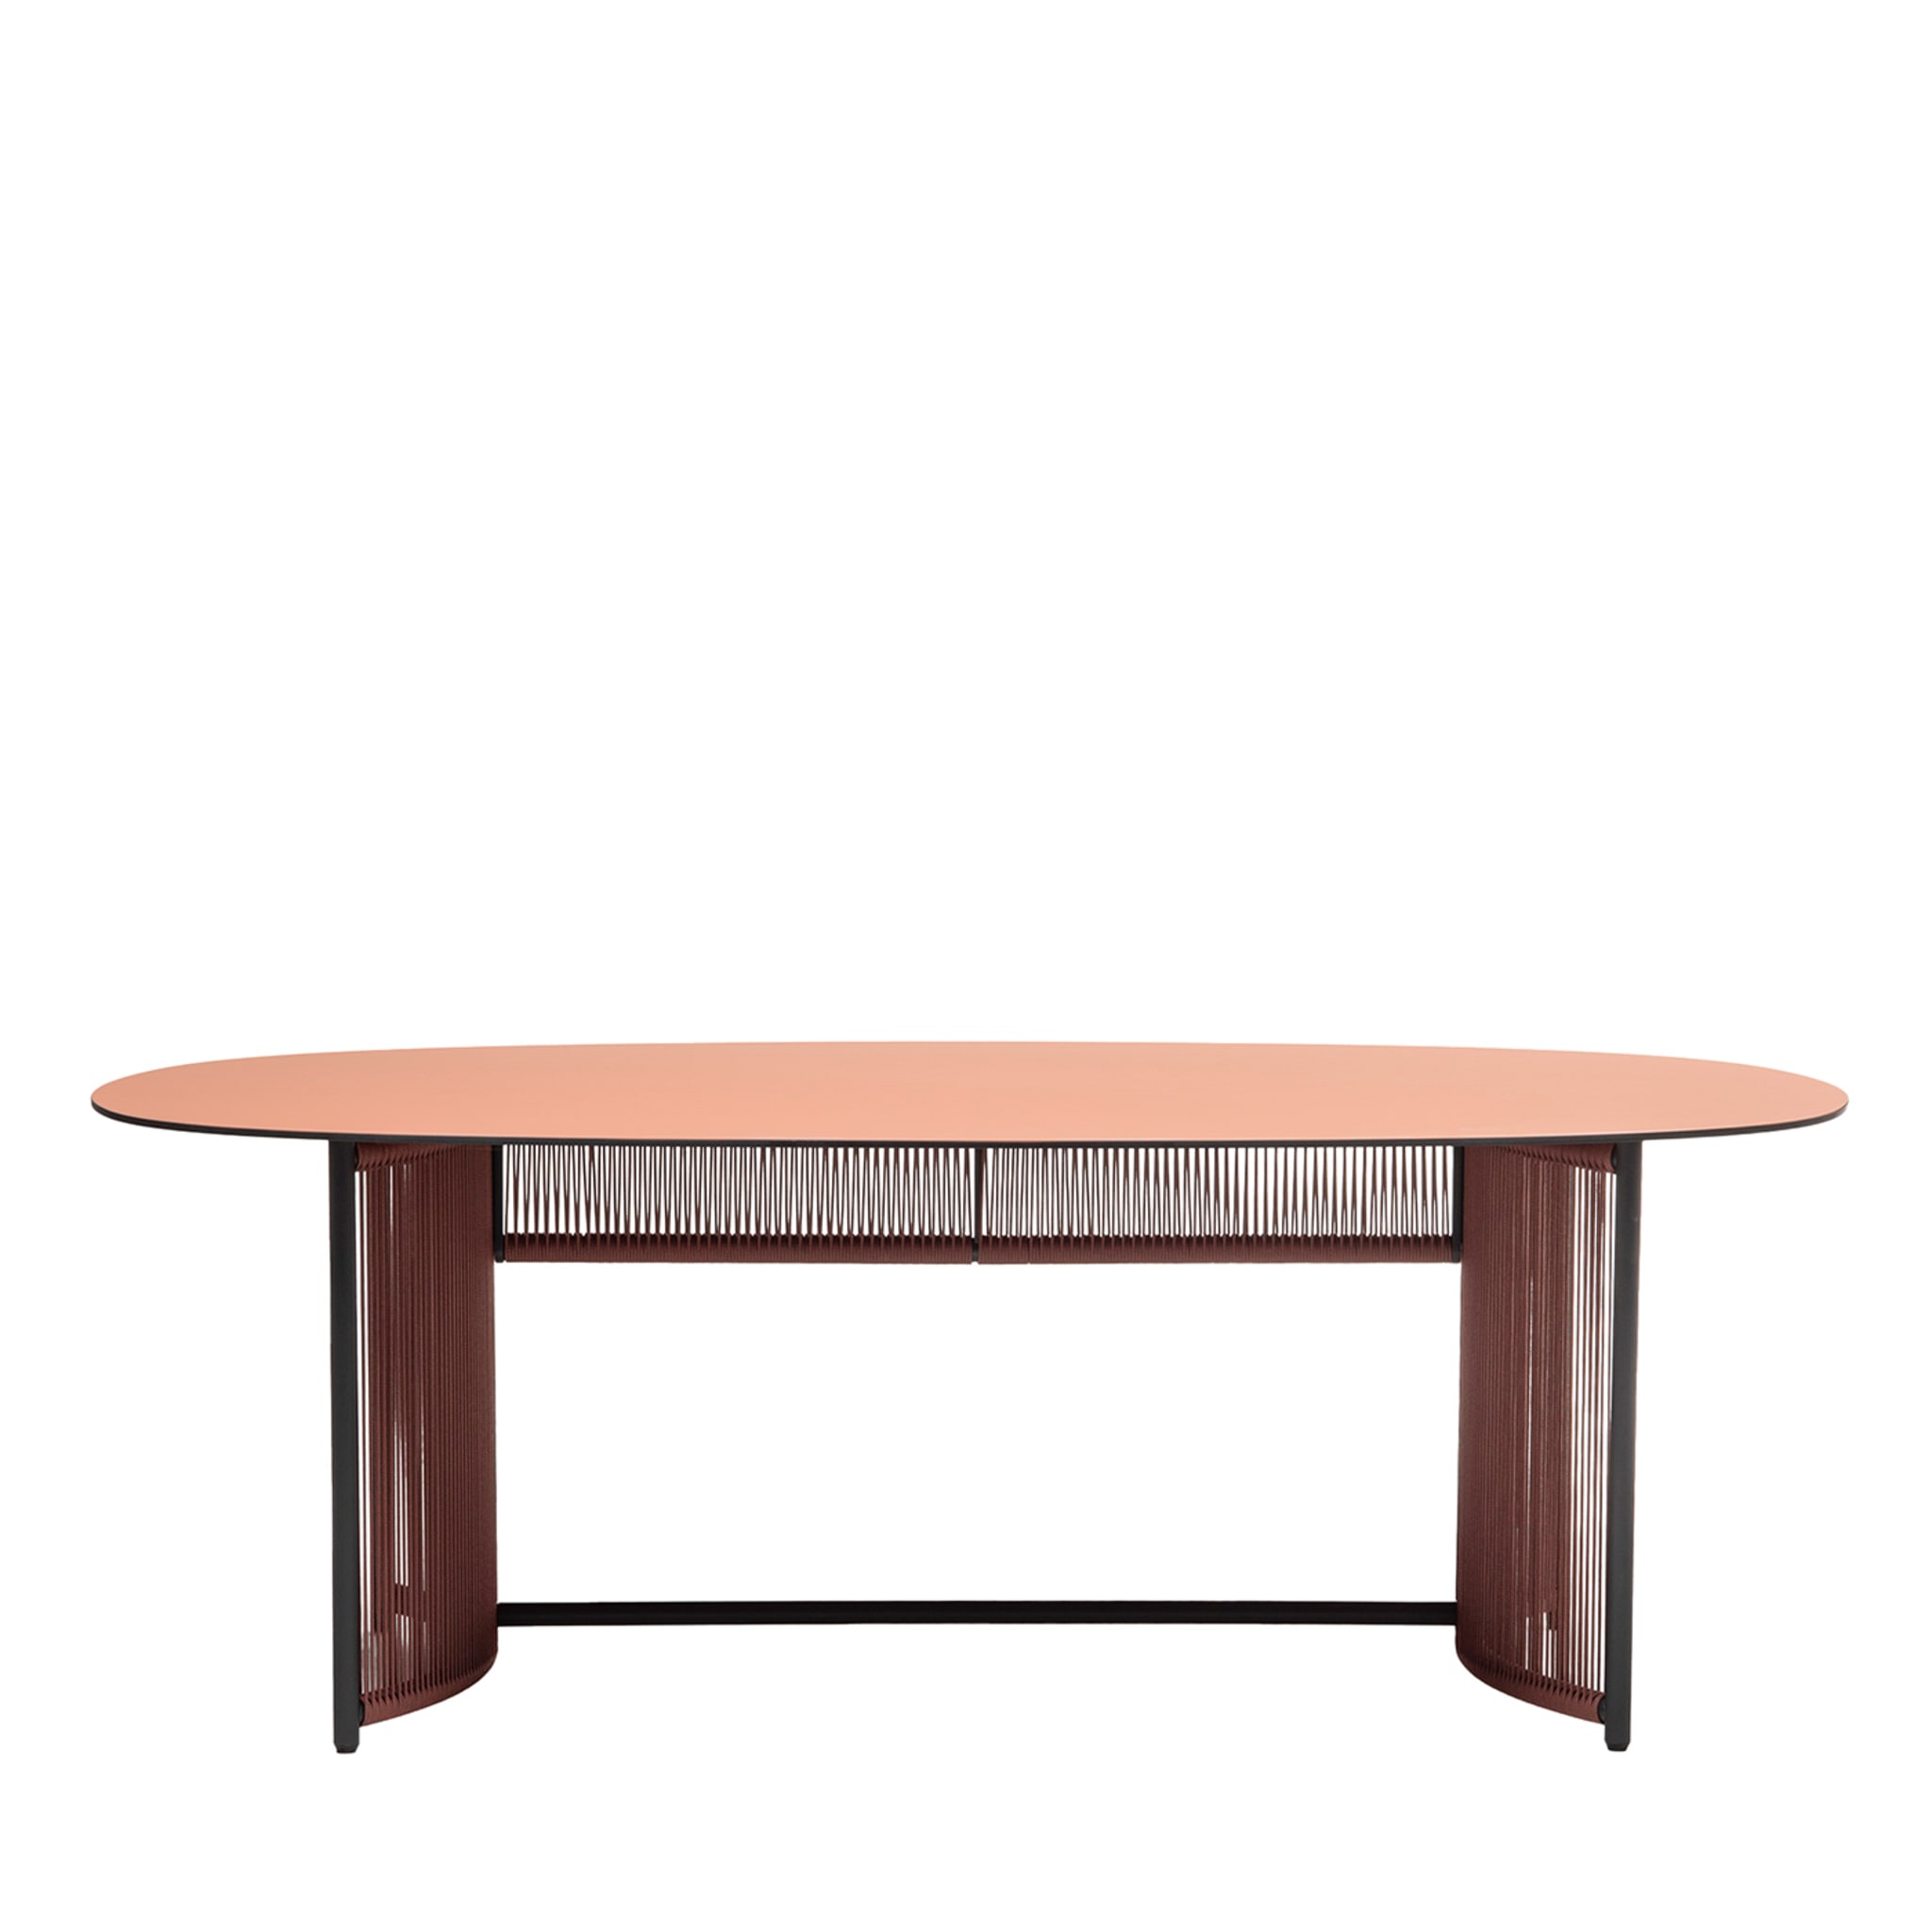 Altana T-OV Table ovale rouge brique par Antonio De Marco - Vue principale